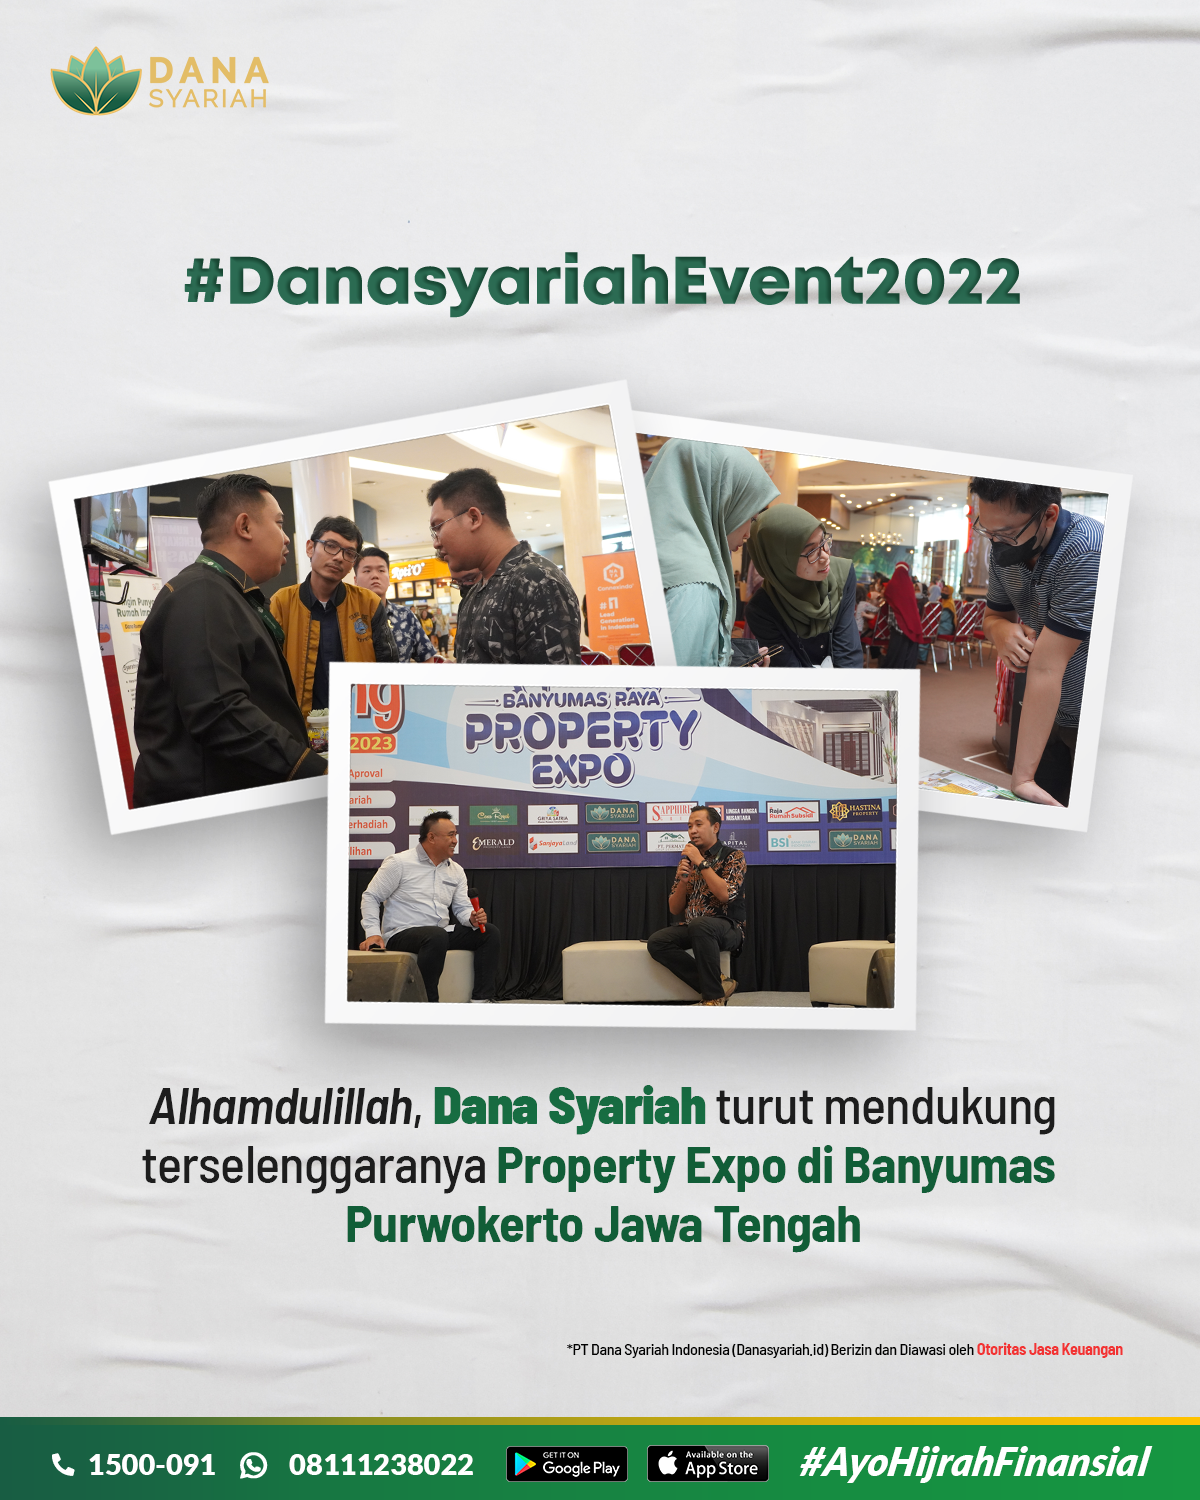 Dana Syariah Danasyariah turut berpartisipasi dalam Banyumas Property Expo 2022